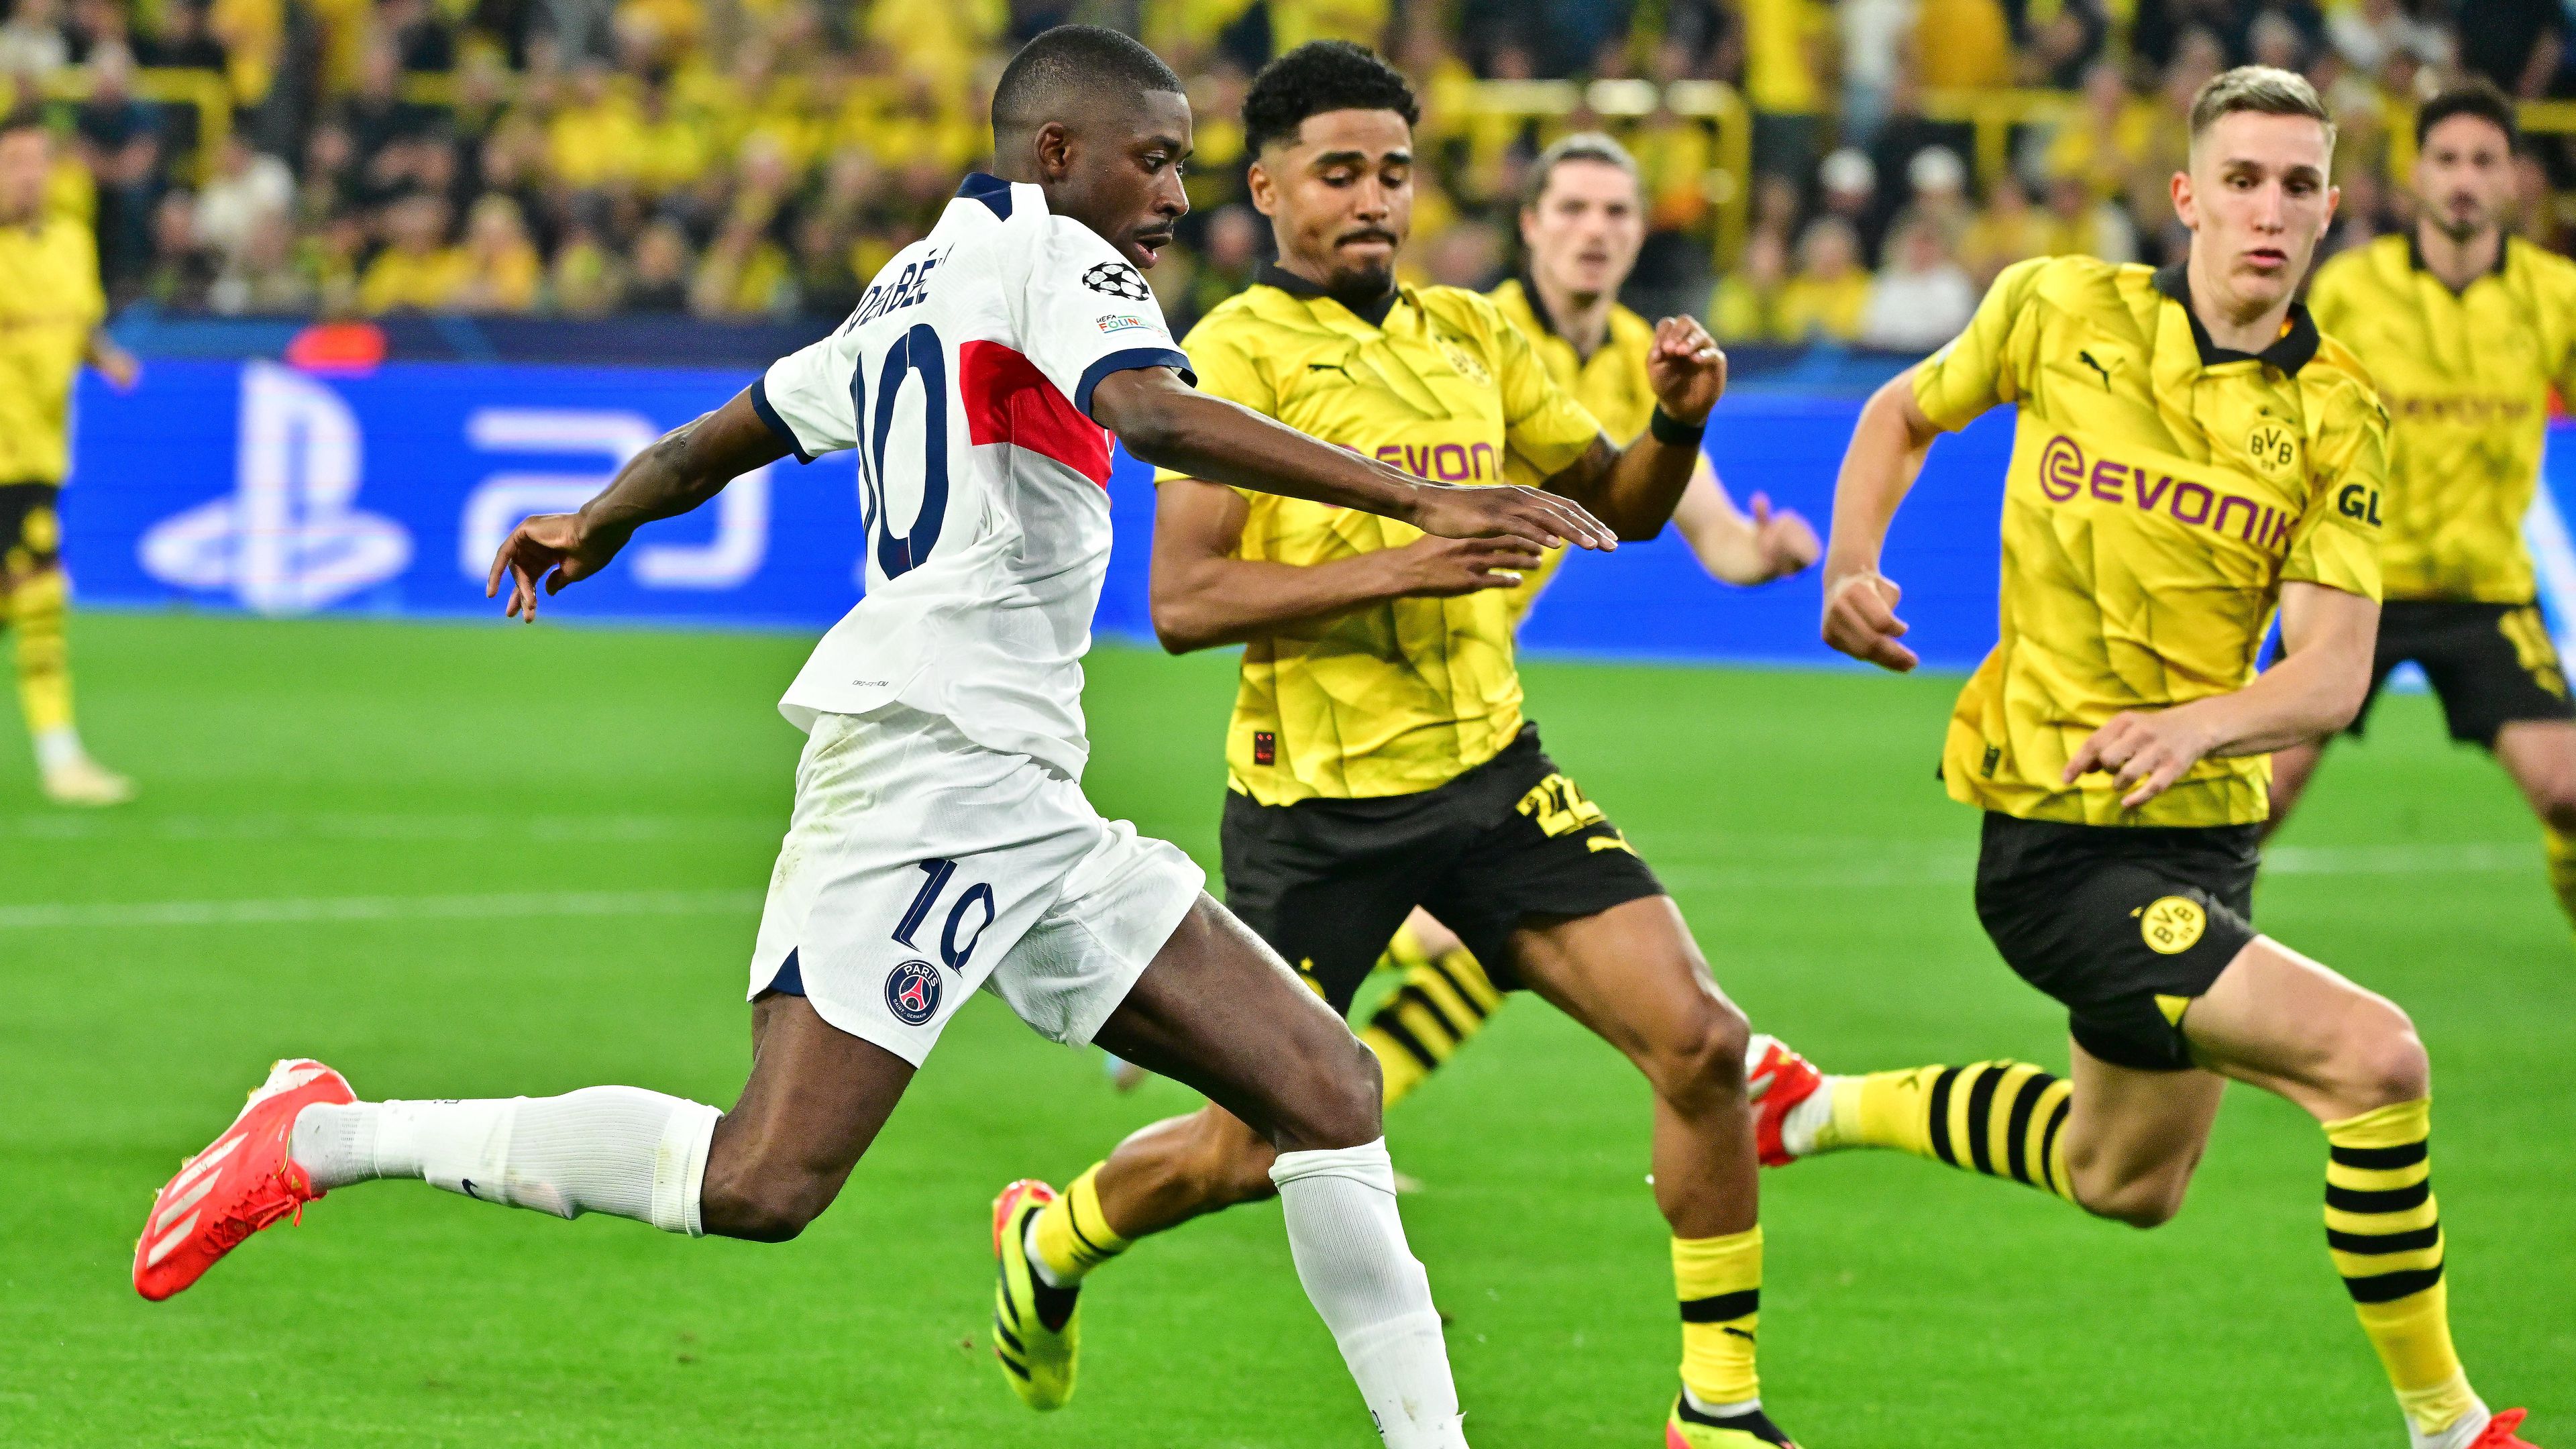 Nincs változtatás, így kezd a PSG és a Dortmund a BL-elődöntő visszavágóján